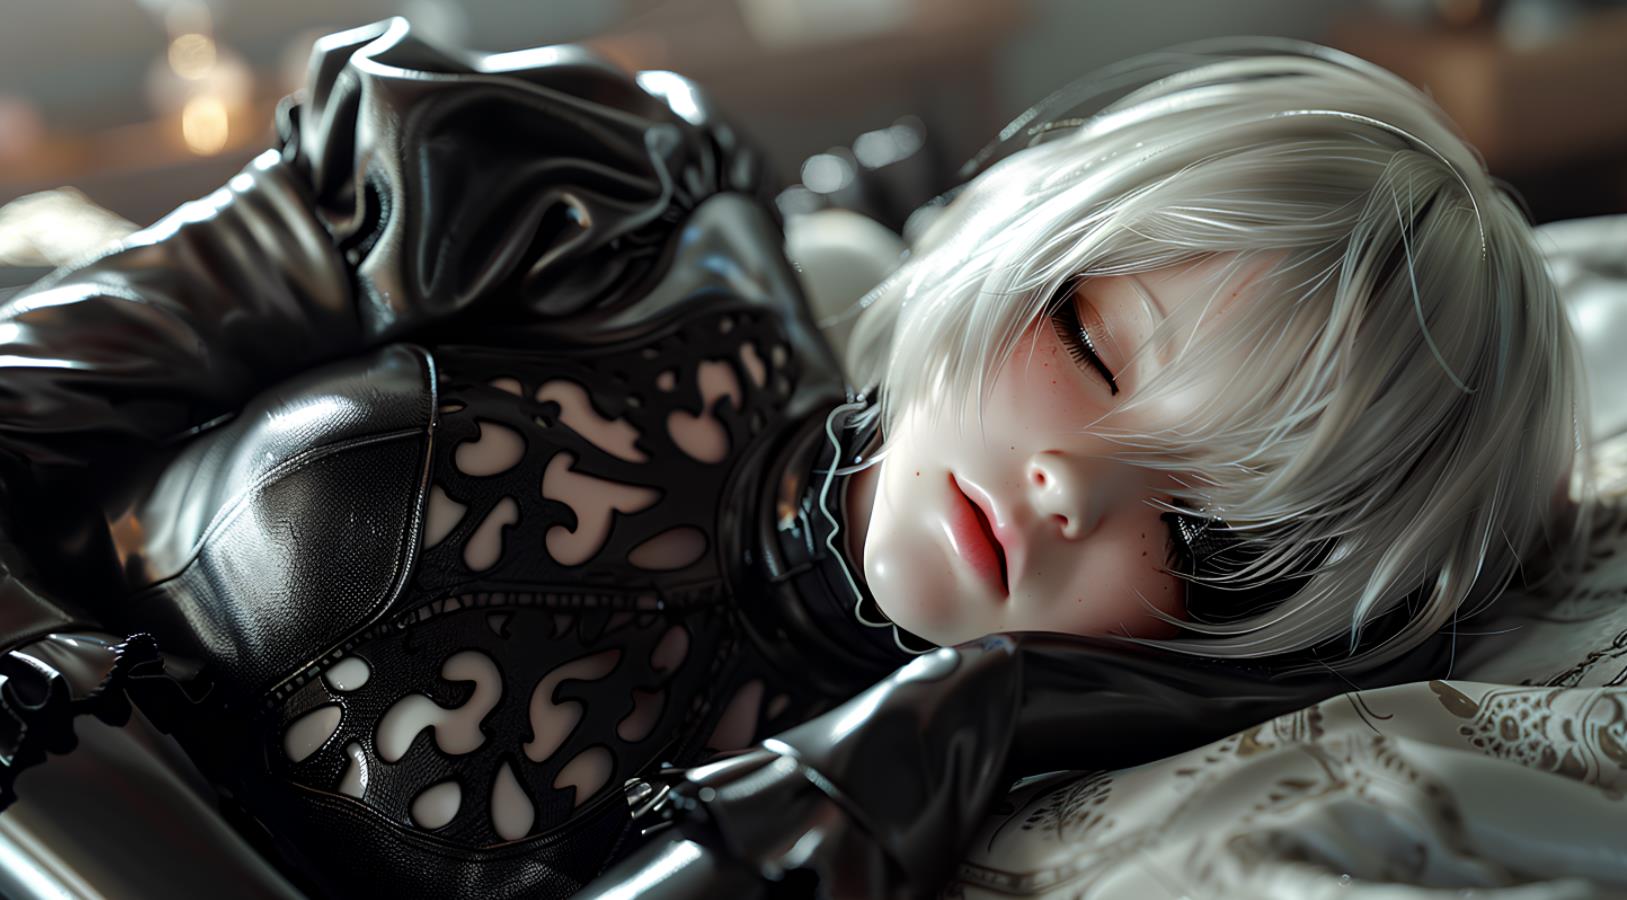 Automata穿着黑衣服，侧睡，仰着头，闭着眼睛，银色头发